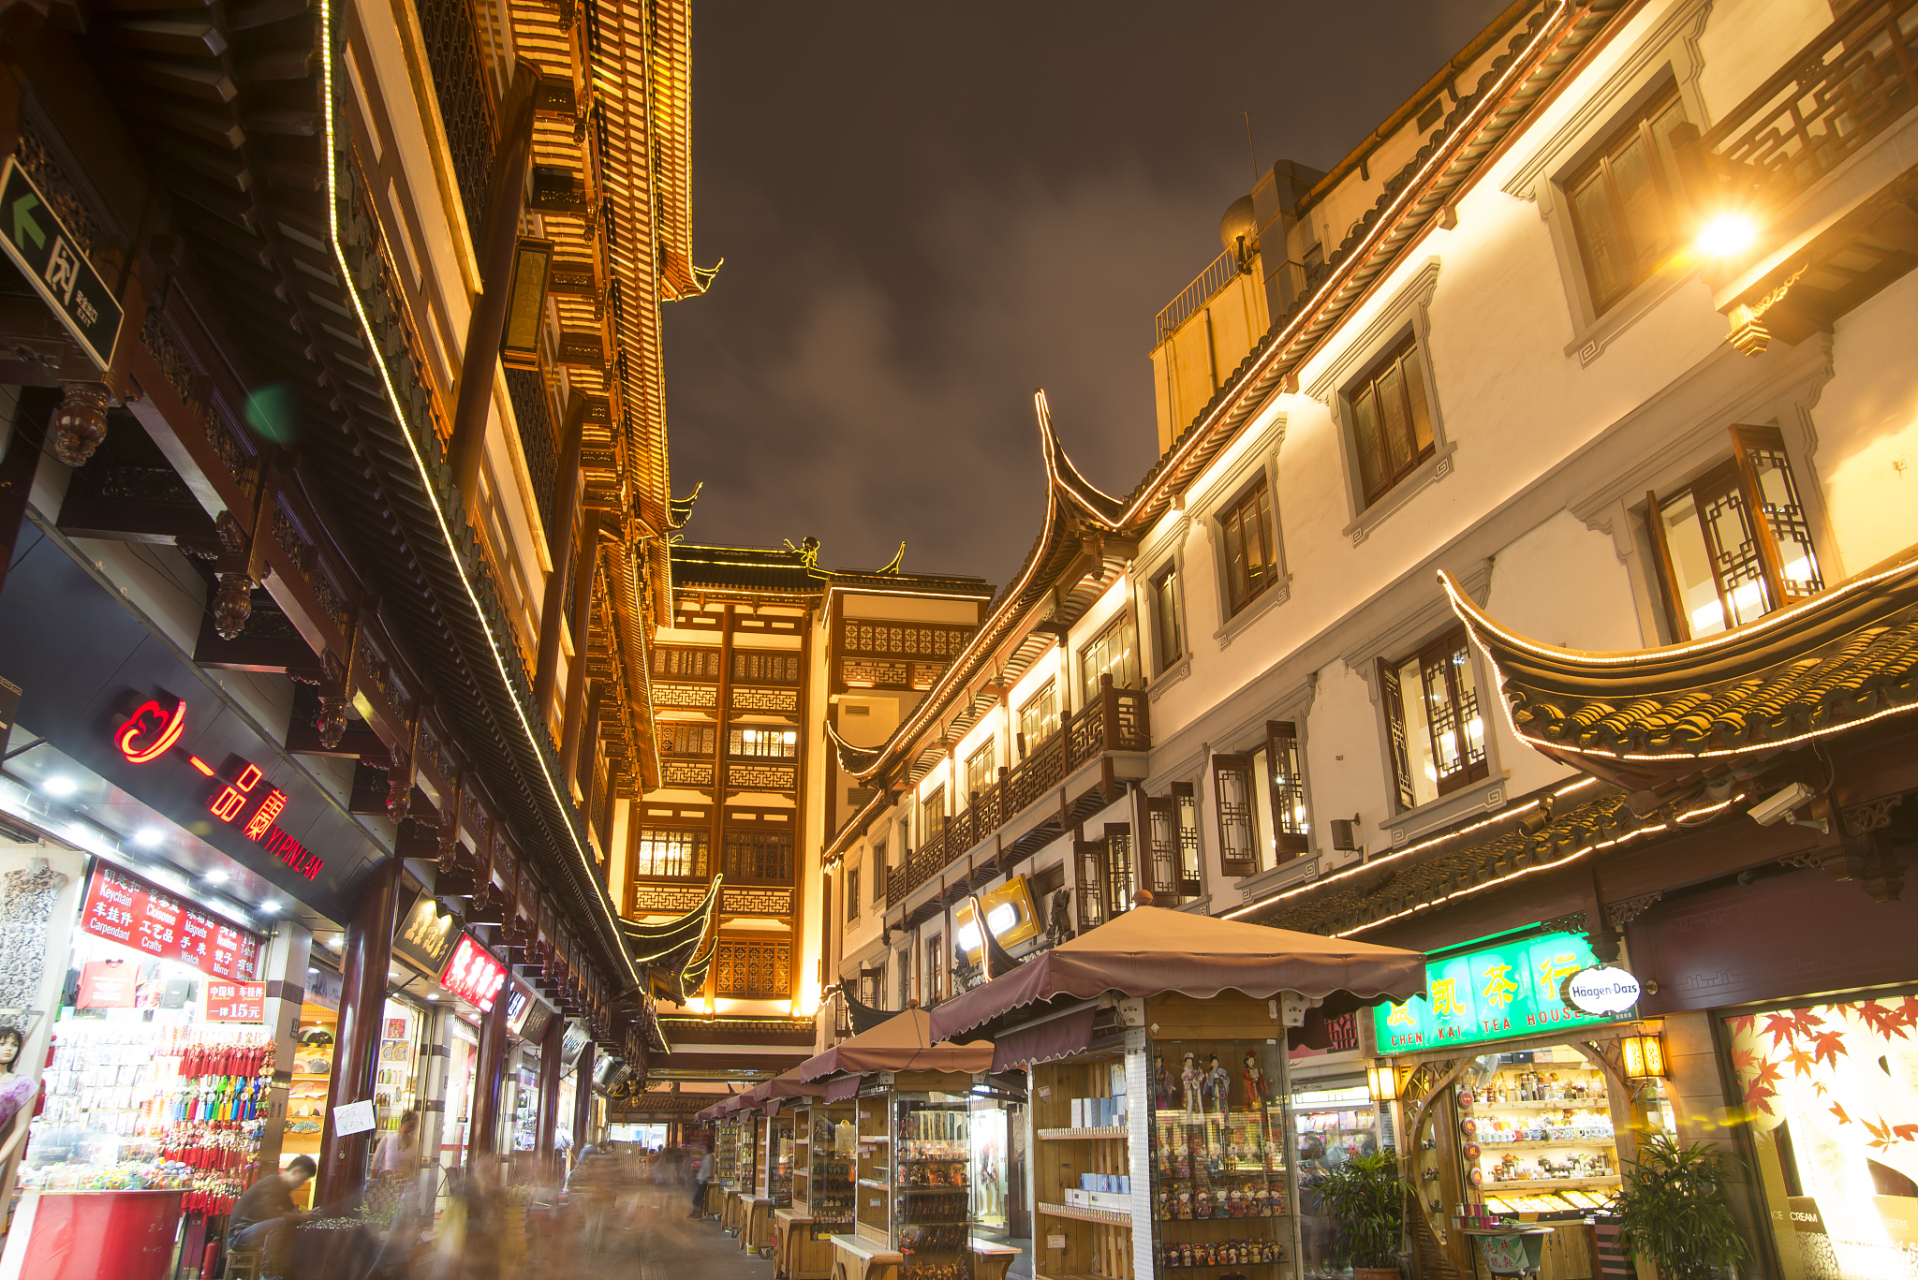 上海城隍庙美食街是一片繁华的食街,慢品人间烟火色,闲观万事岁月长